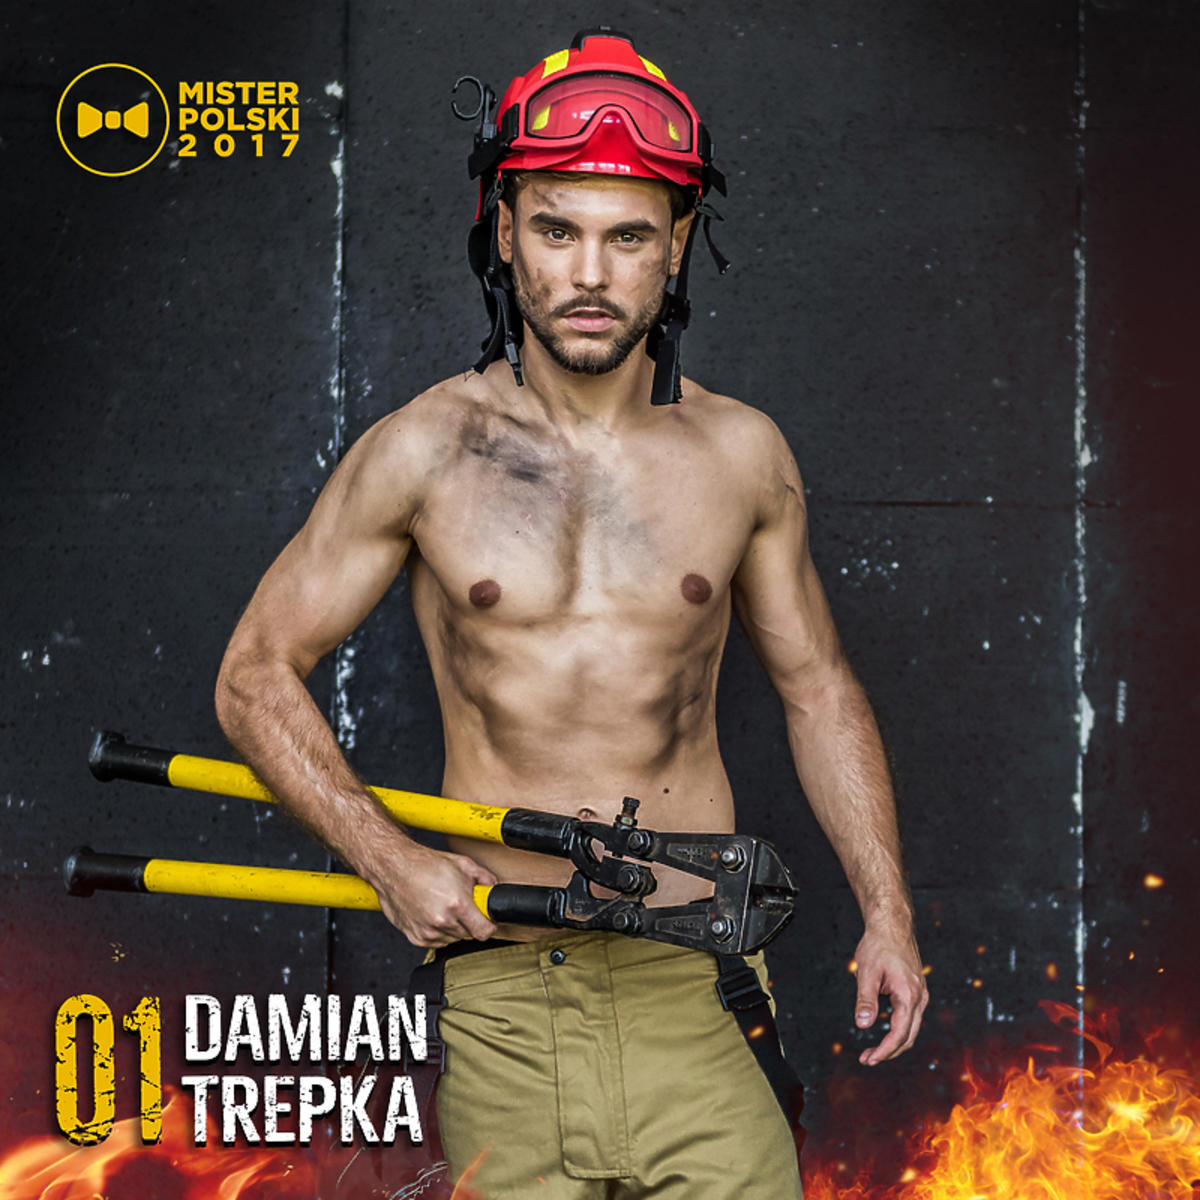 Damian Trepka